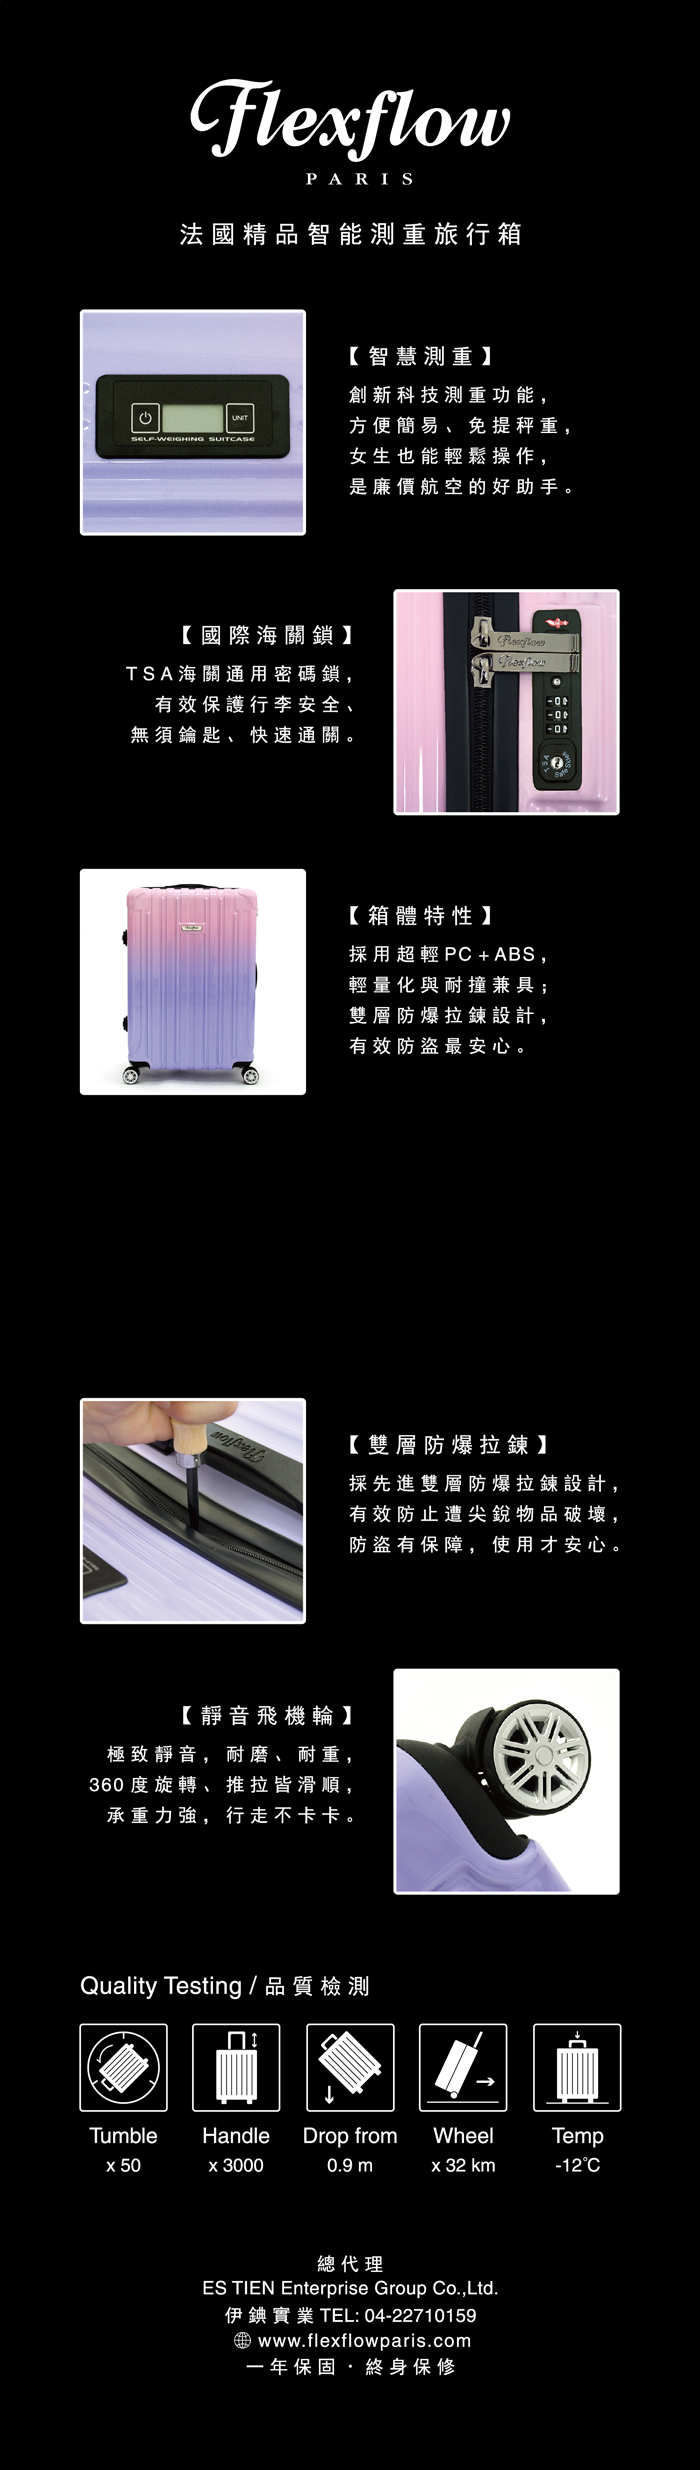 Flexflow 藍石英 大理石 29吋 智能測重 可擴充拉鍊防爆拉鍊旅行箱 里爾系列 行李箱 【官方直營】